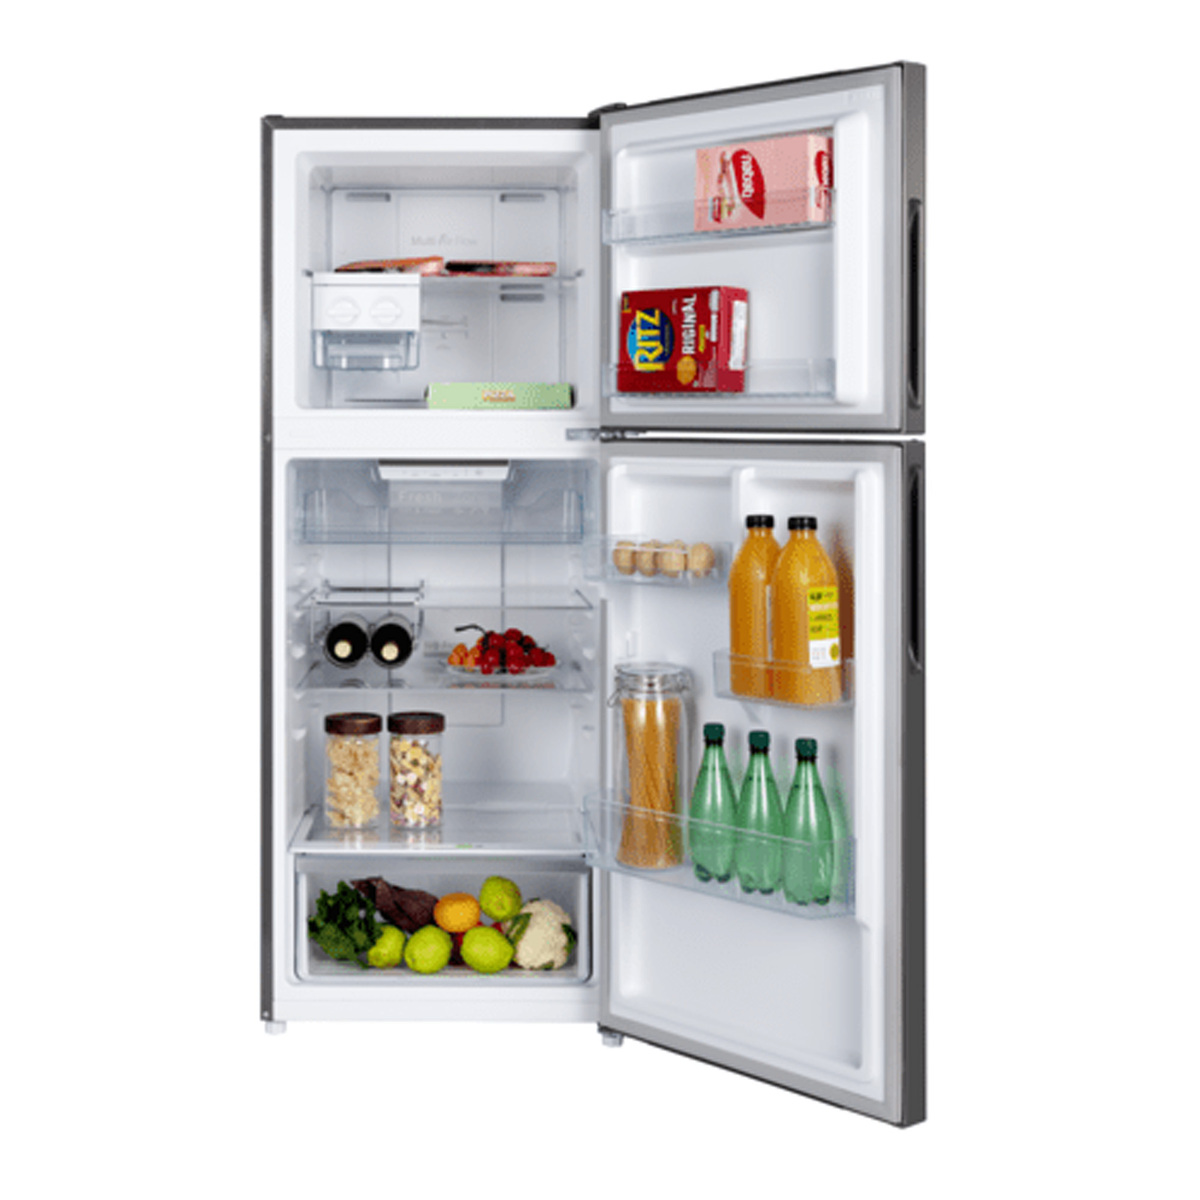 Hoover Double Door Inverter Refrigerator, 386 L, Inox, HTR-M386-S